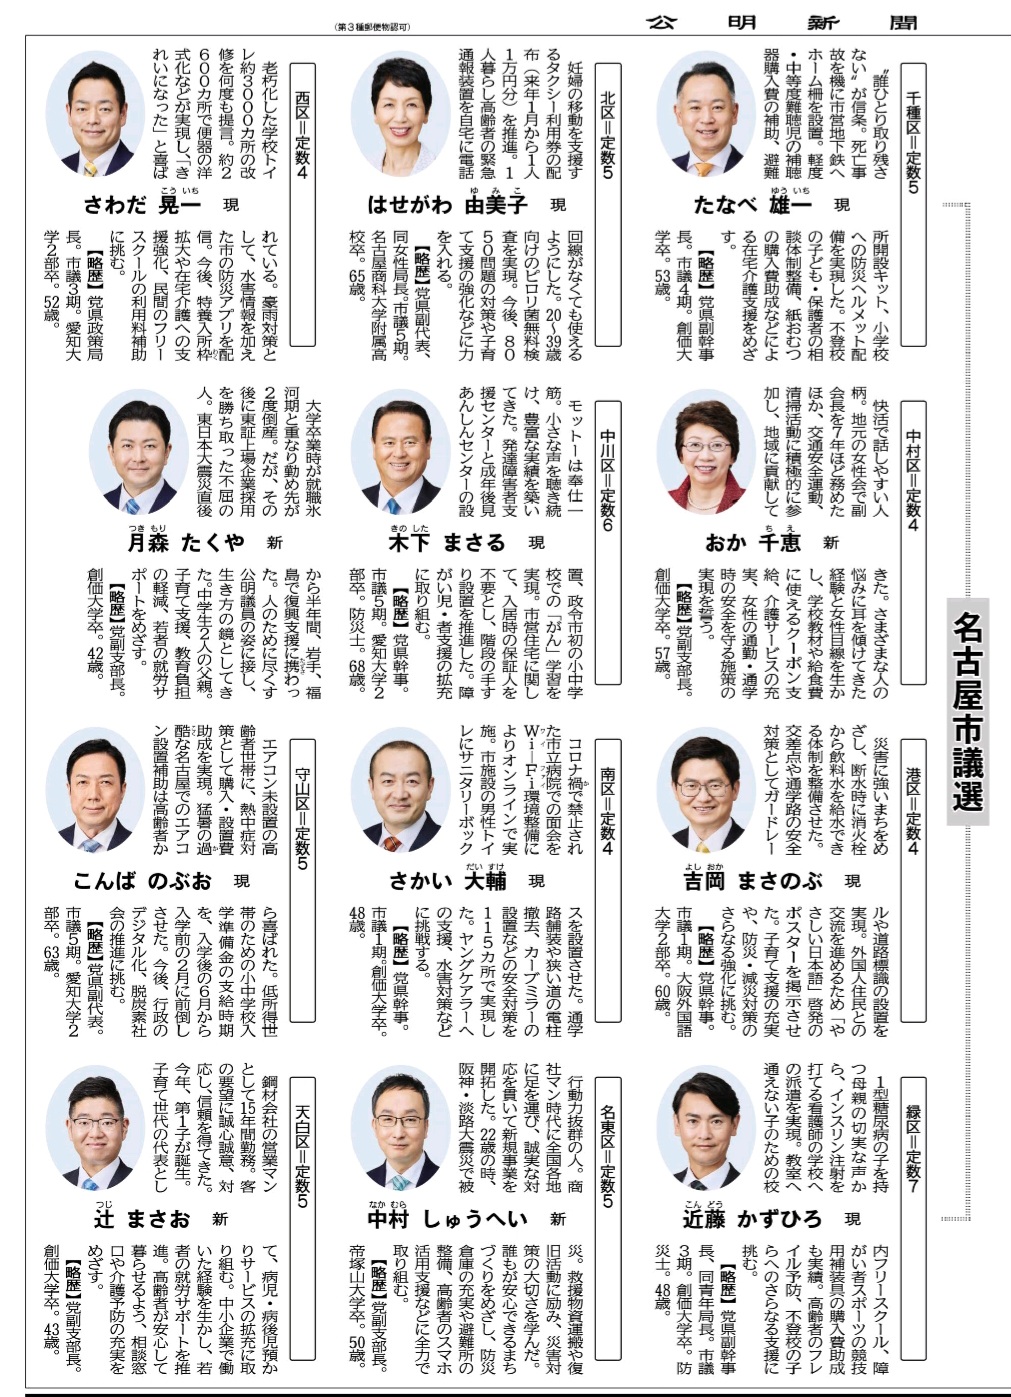 名古屋市議選の予定候補のプロフィール